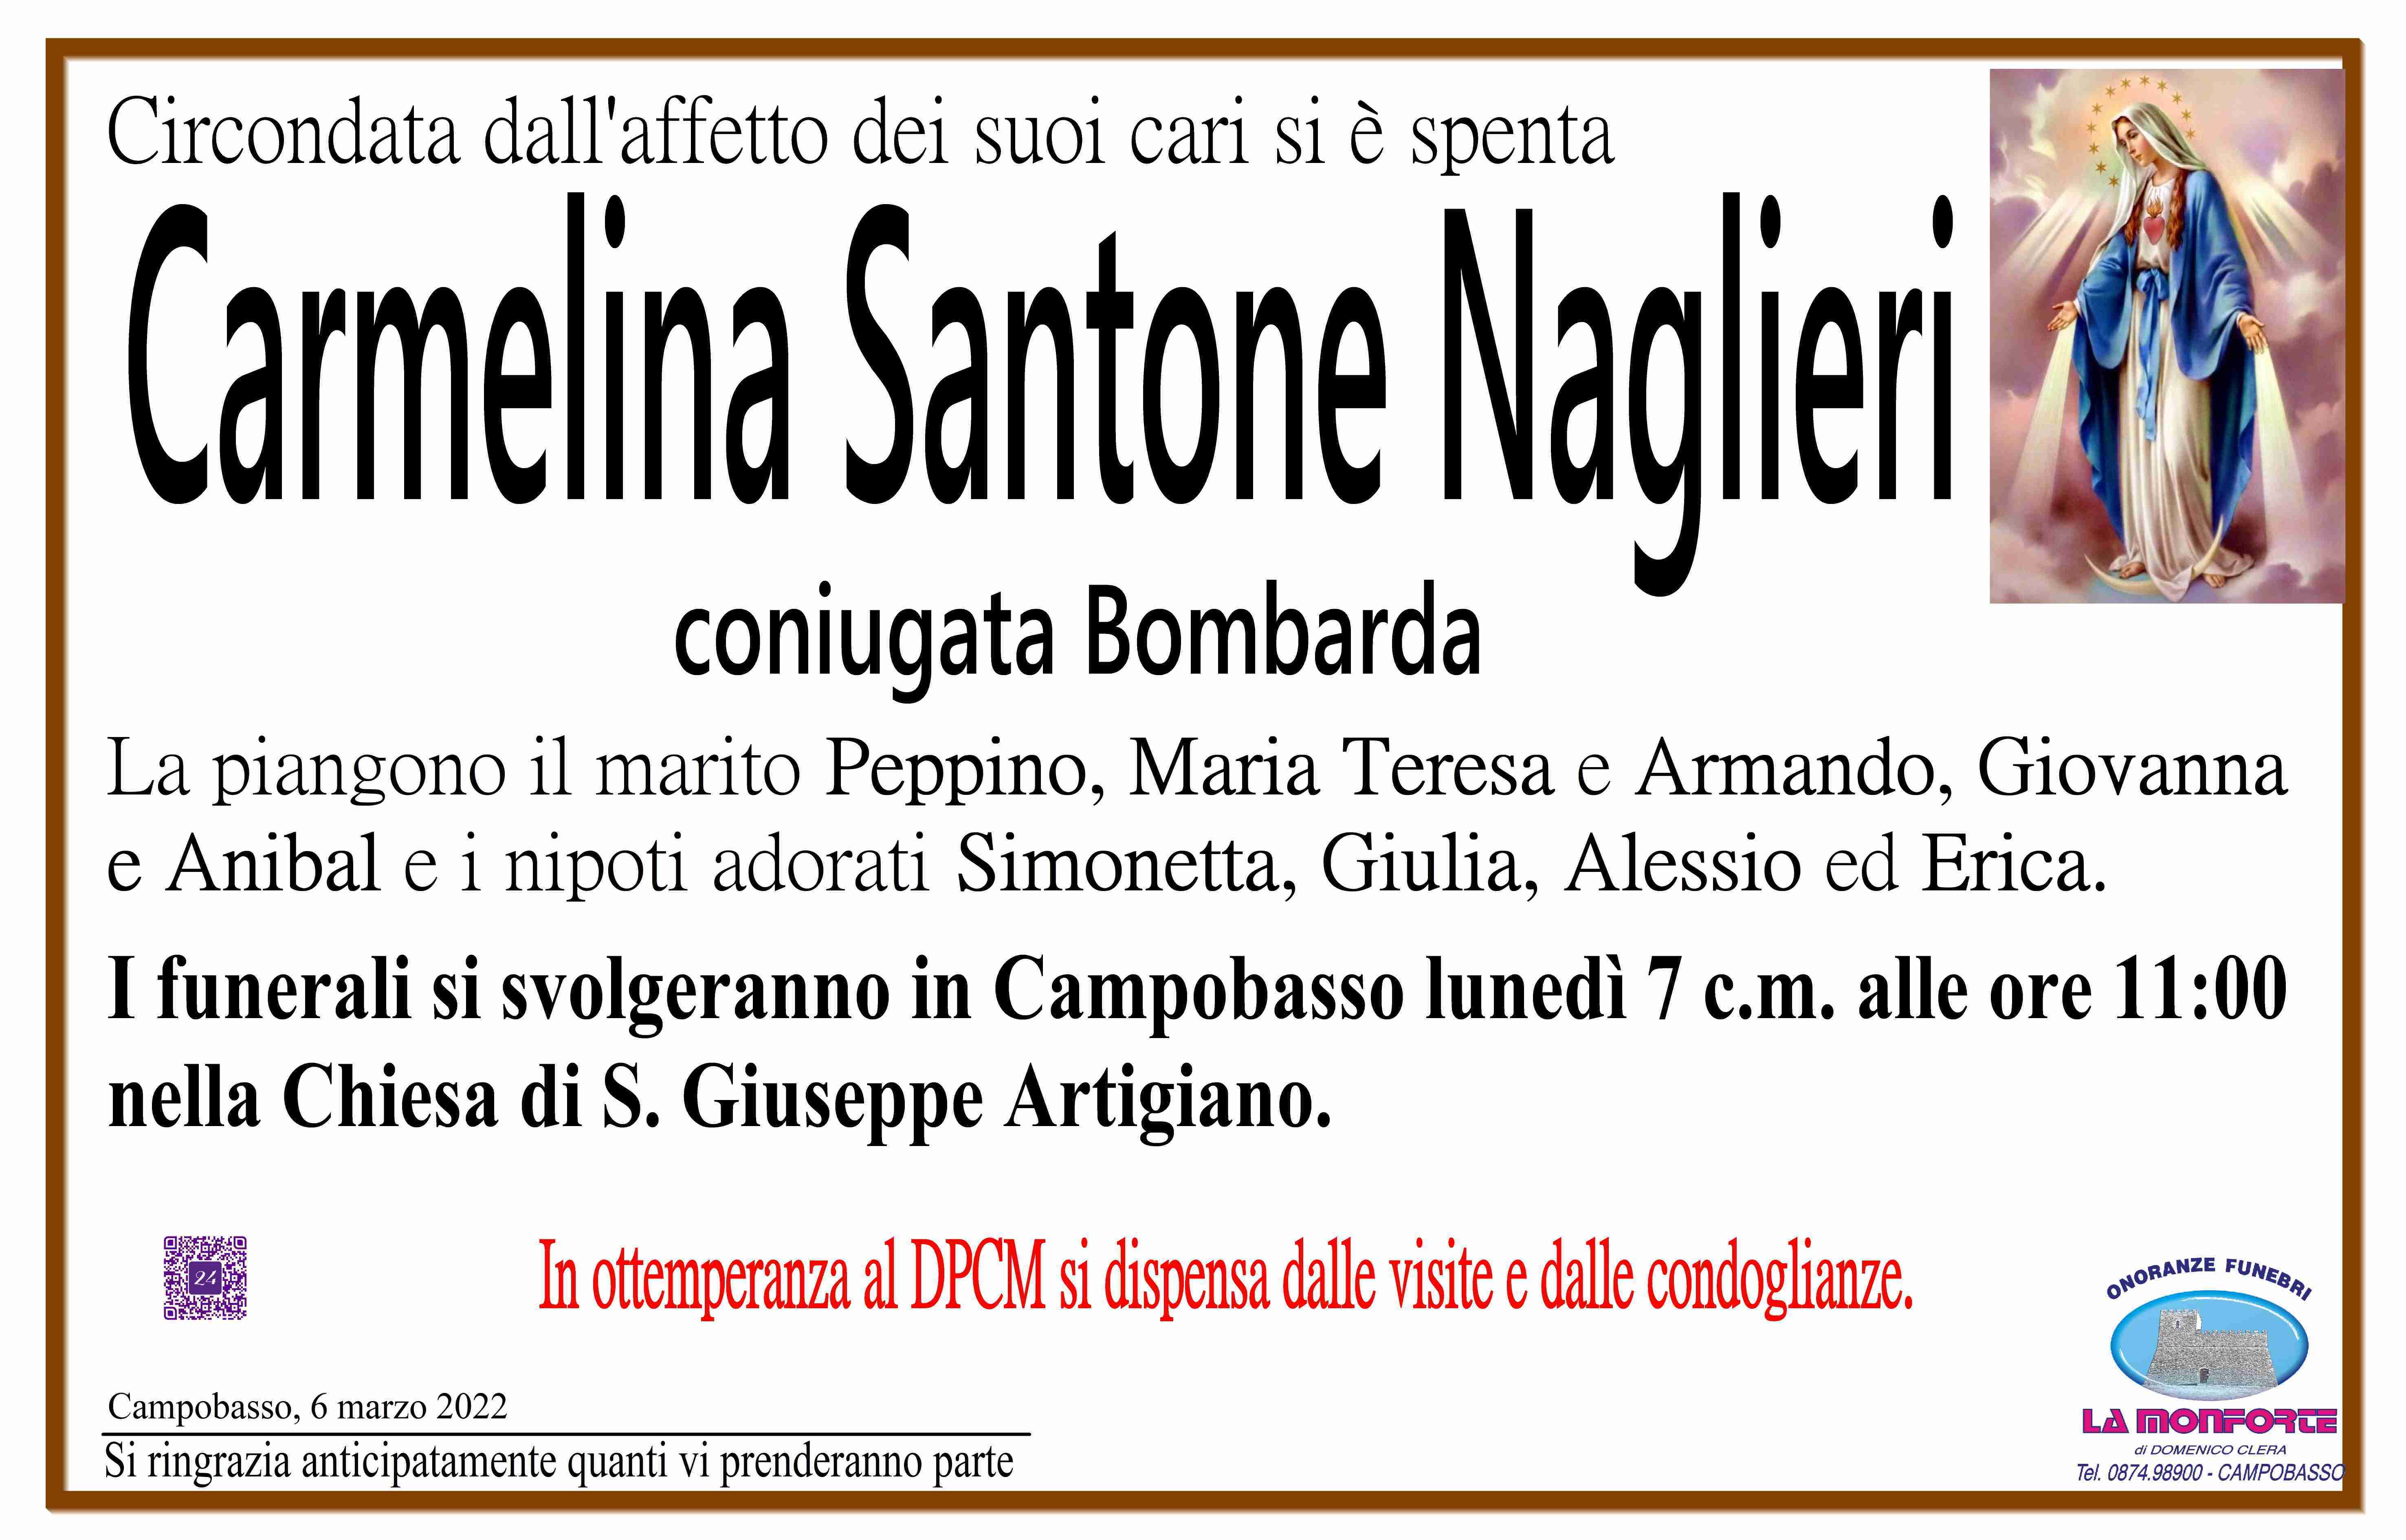 Carmelina Naglieri Santone